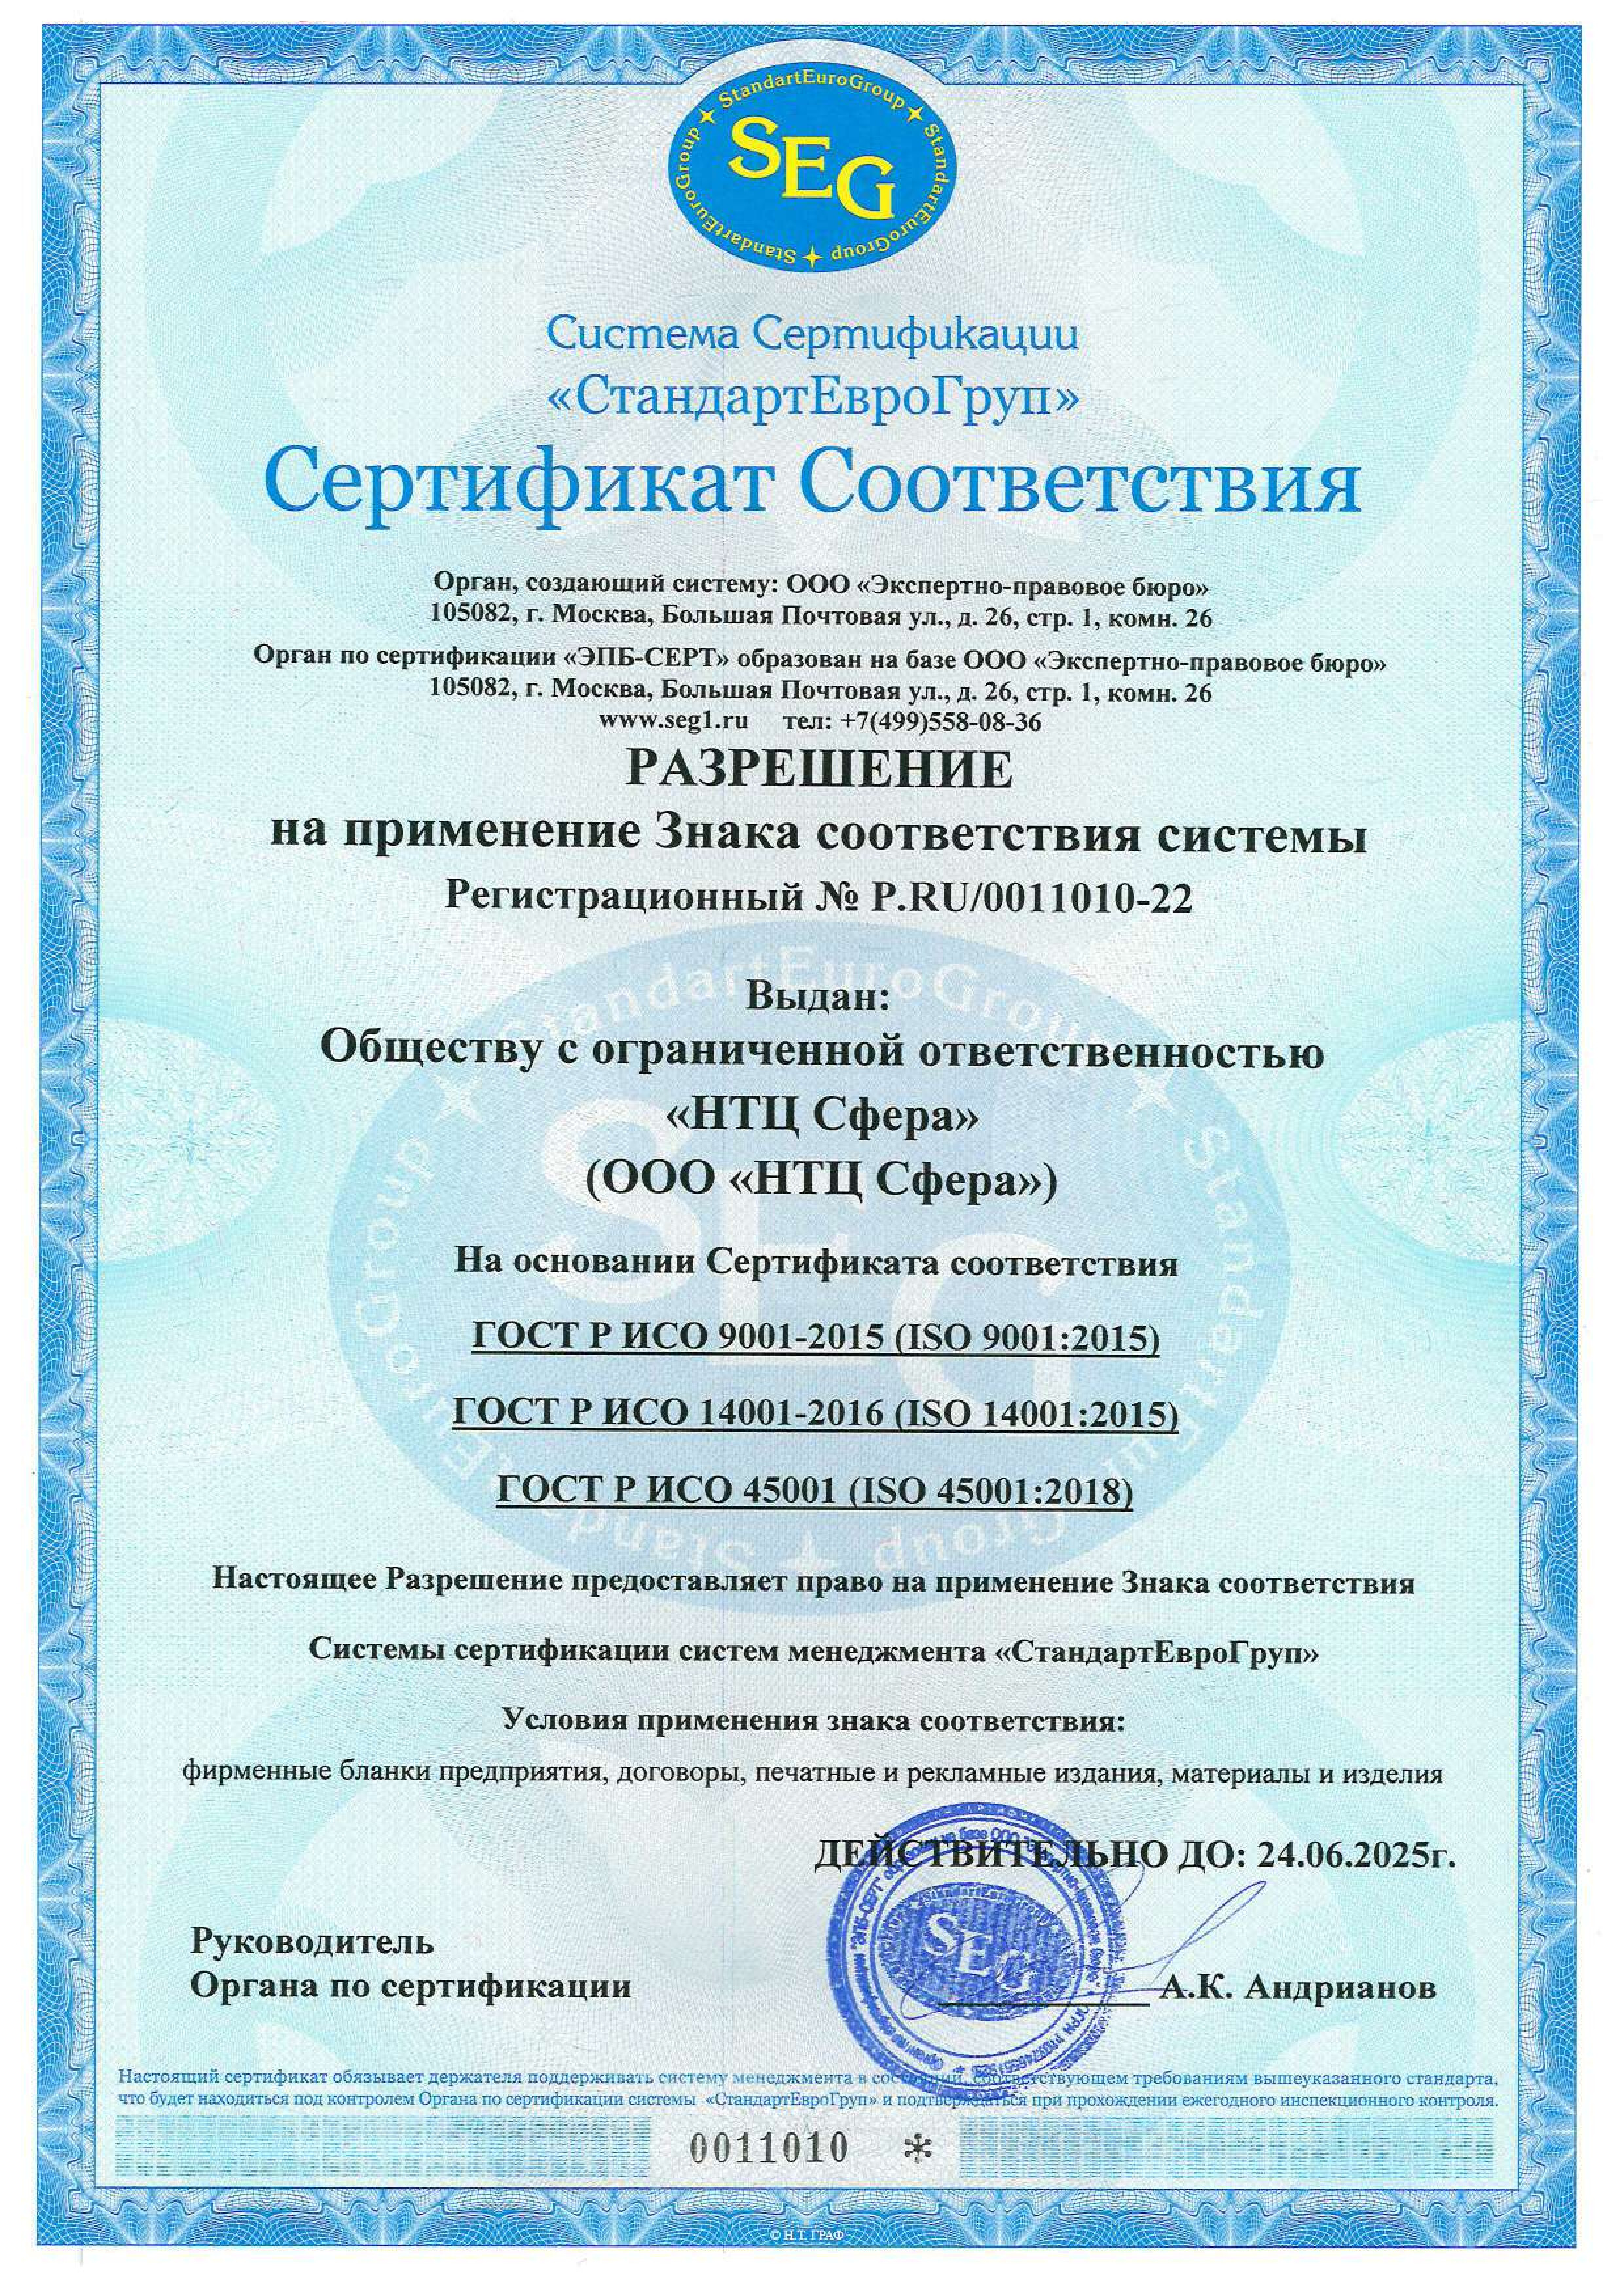 Разрешение на применение Знака соответствия системы ИСМ № P.RU_0011010-22